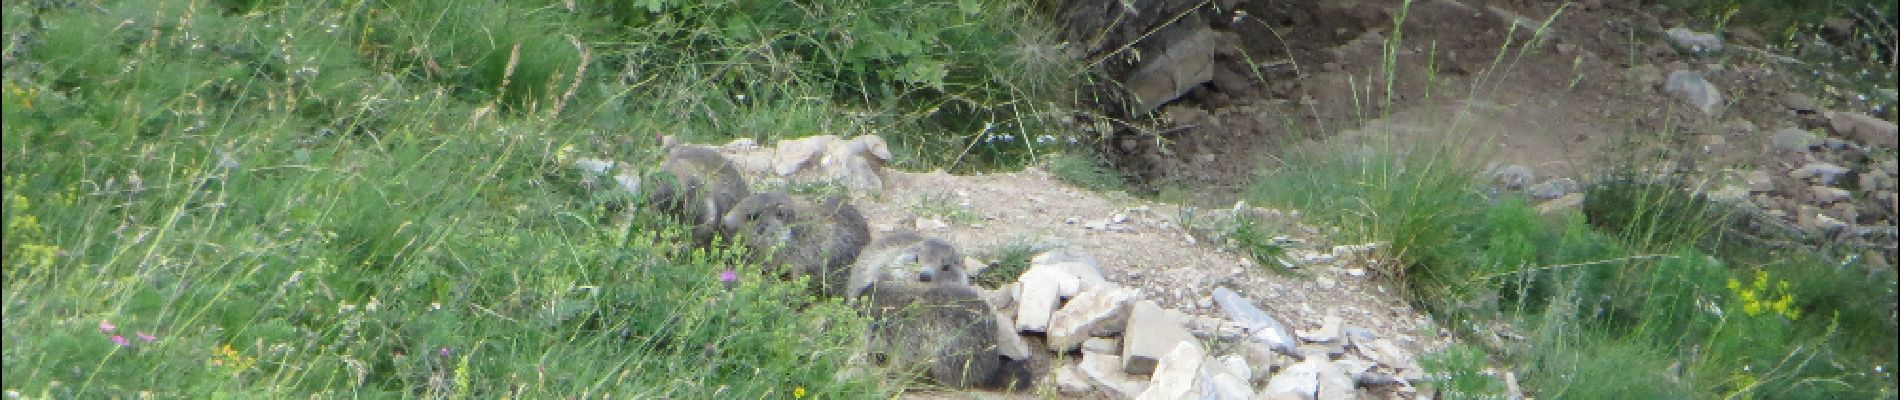 POI Allos - marmottes - Photo